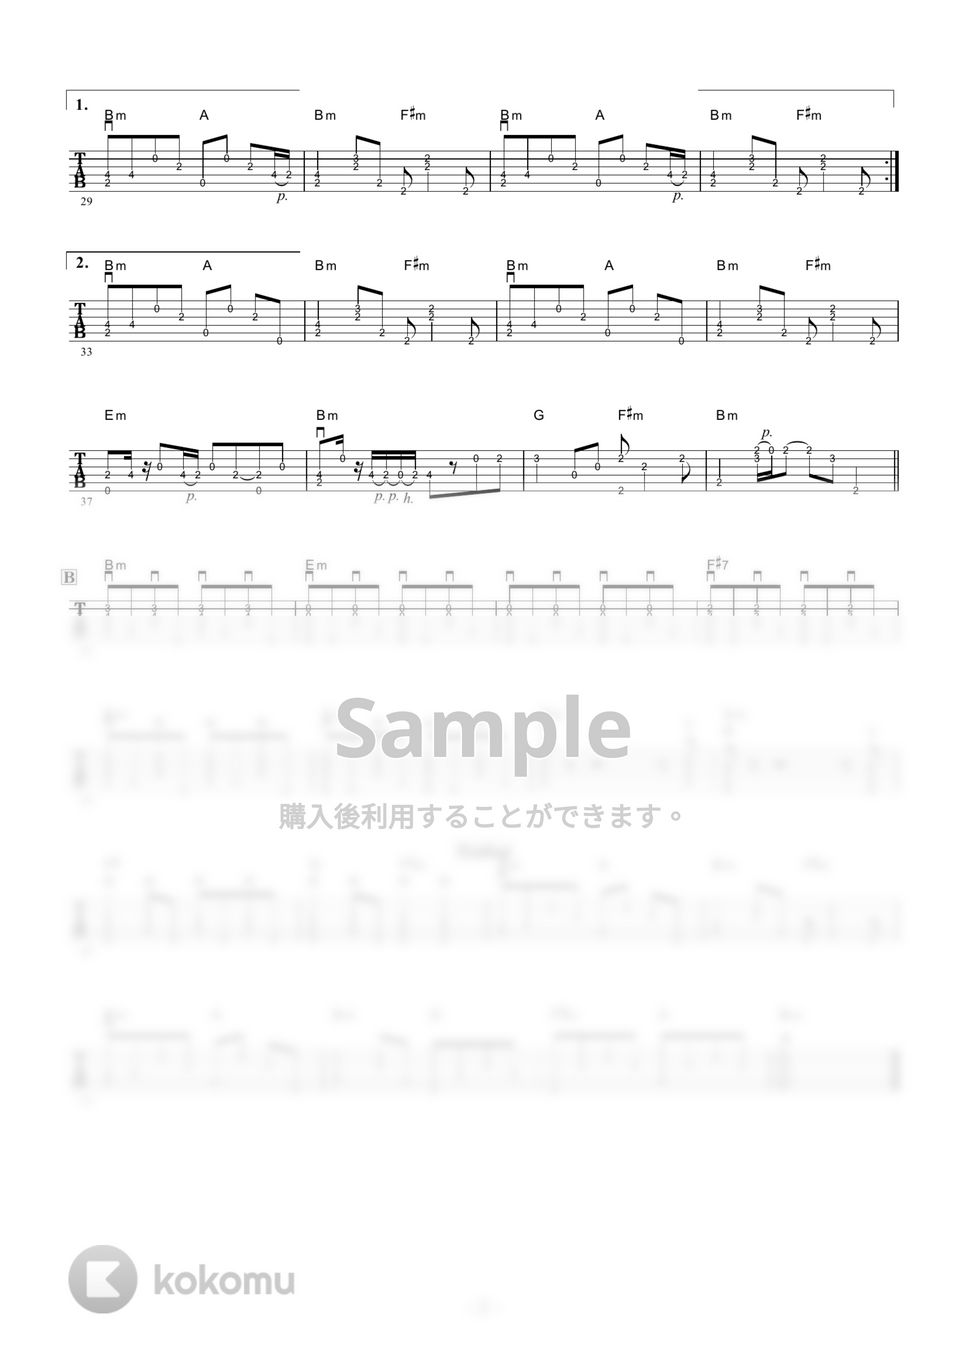 奥村チヨ - 恋の奴隷 (ギター伴奏/イントロ・間奏ソロギター) by 伴奏屋TAB譜